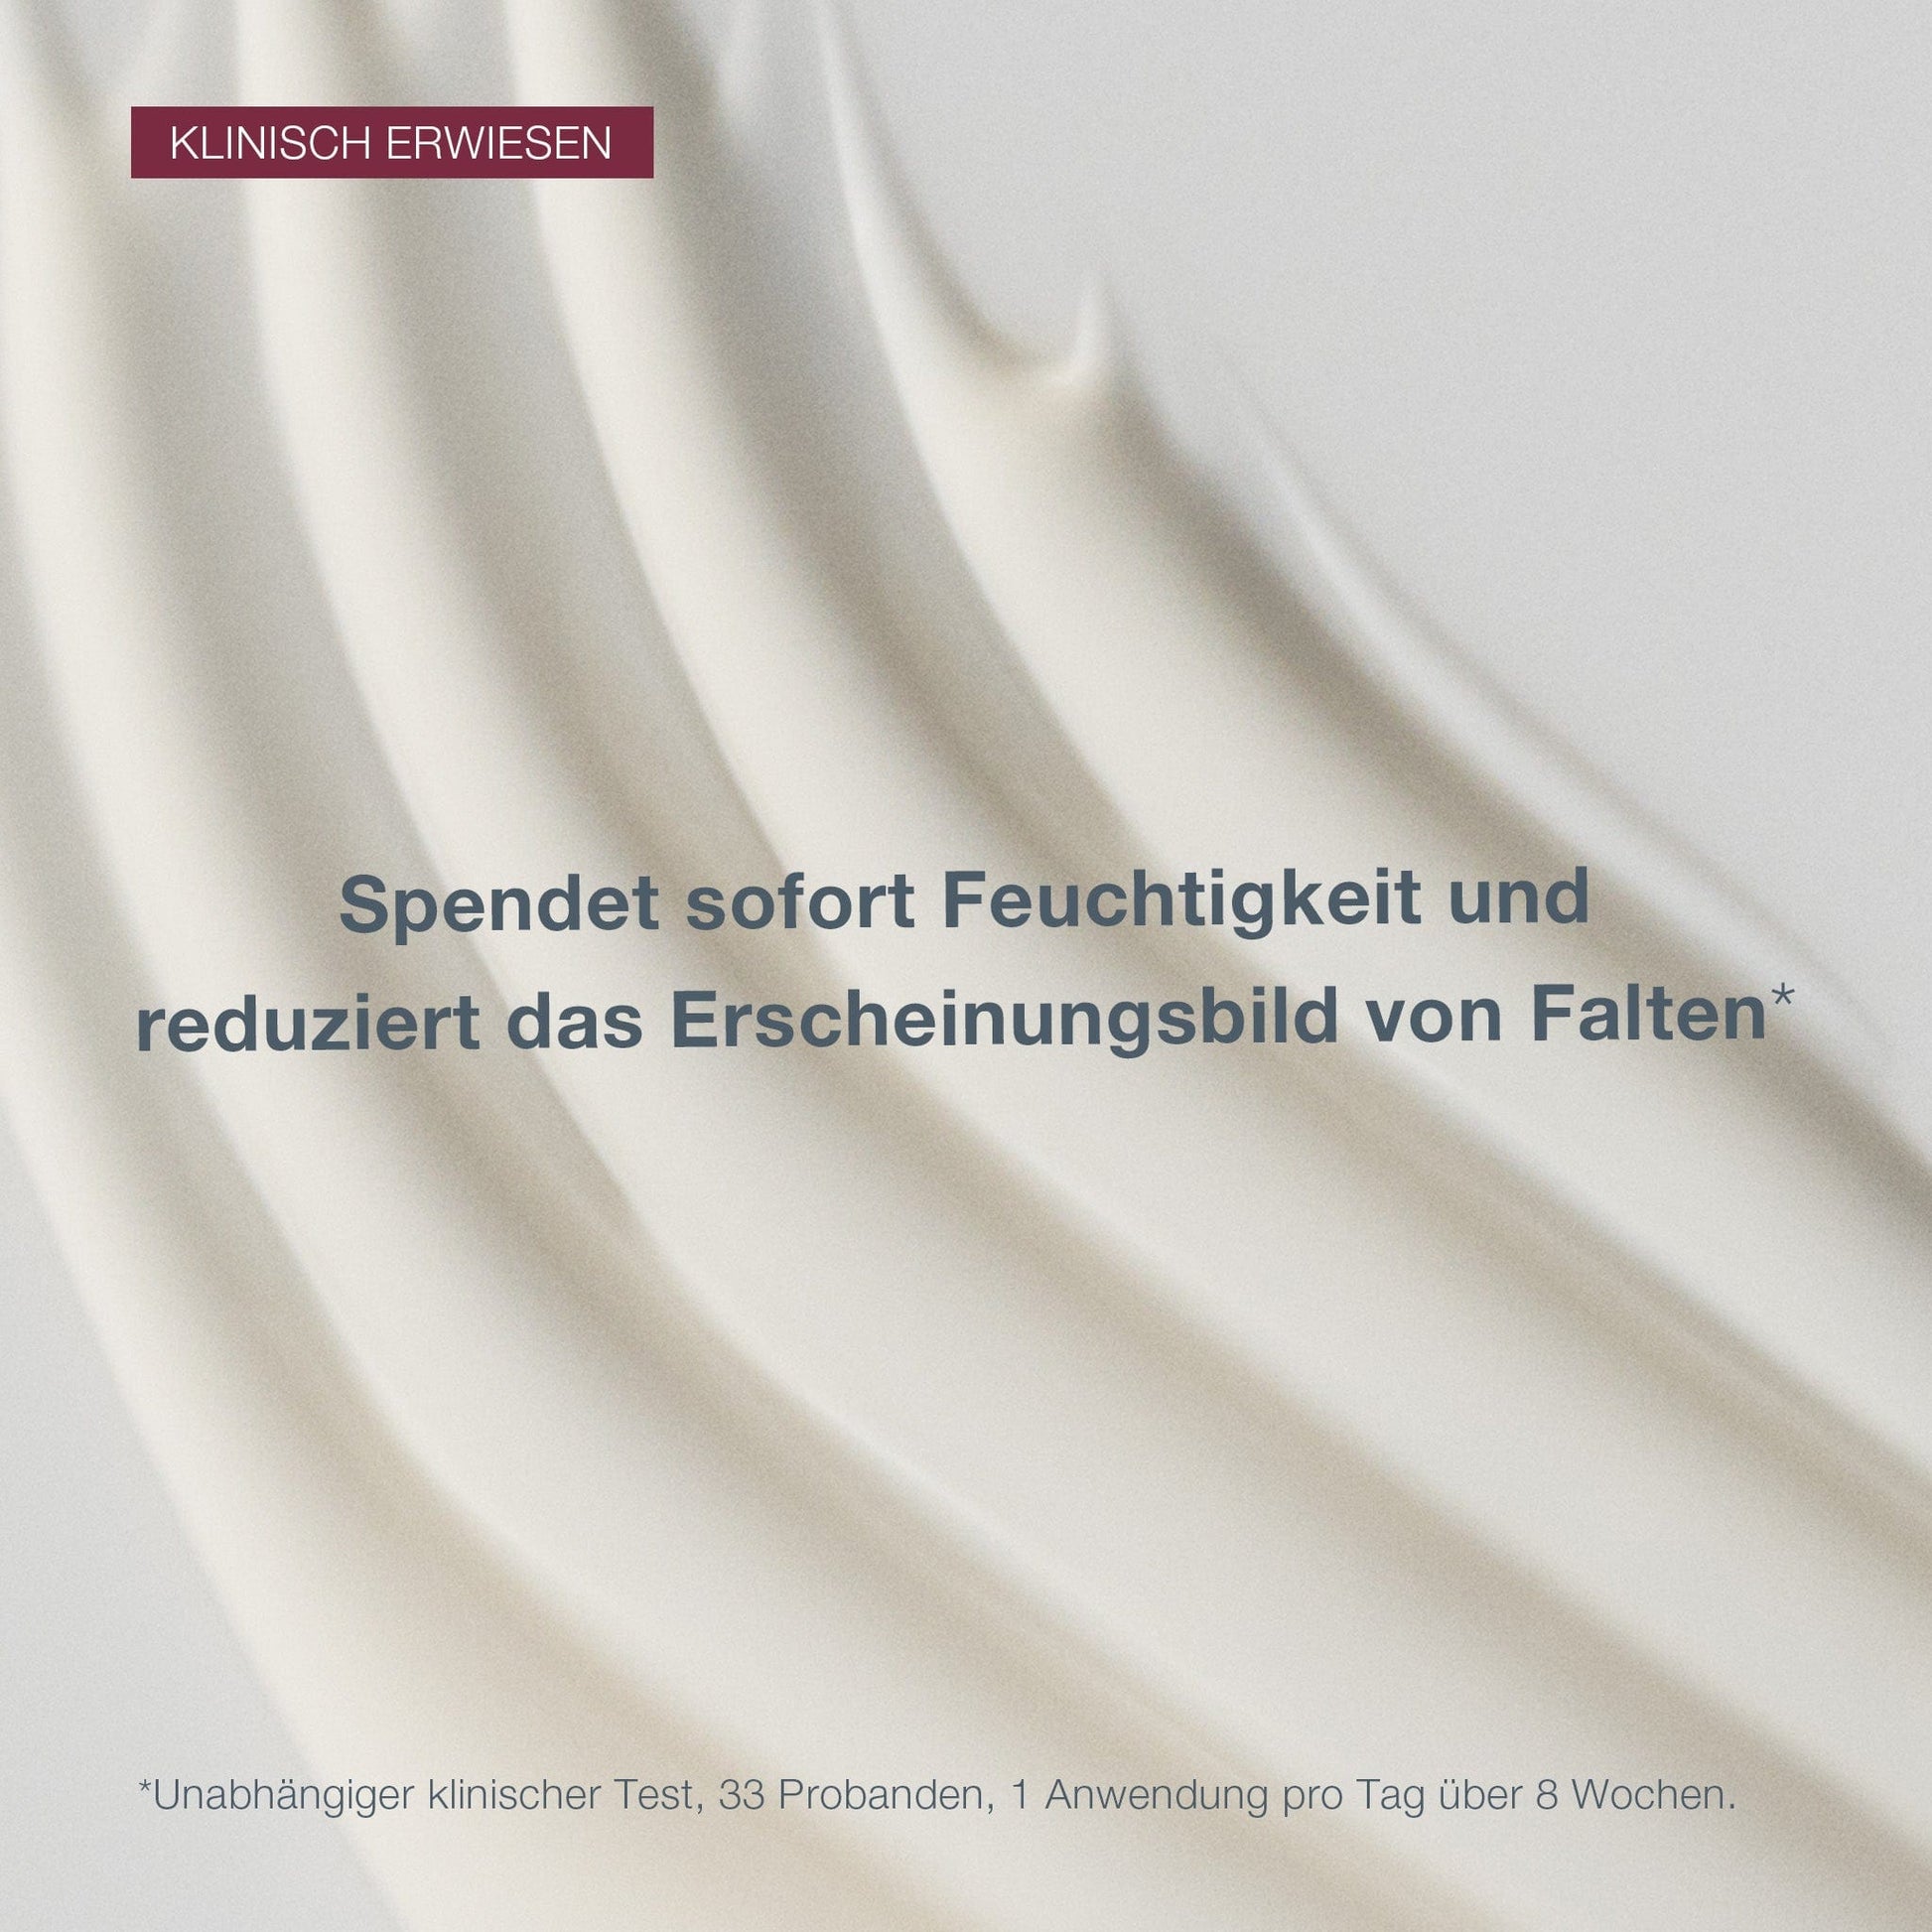 Eine Nahaufnahme von Dynamic Skin Recovery SPF50, einer weißen, cremigen Substanz mit deutschem Text, der die feuchtigkeitsspendende und faltenhemmende Wirkung des Produkts anpreist, einschließlich seiner Anti-Aging-Tagespflege-Eigenschaften.